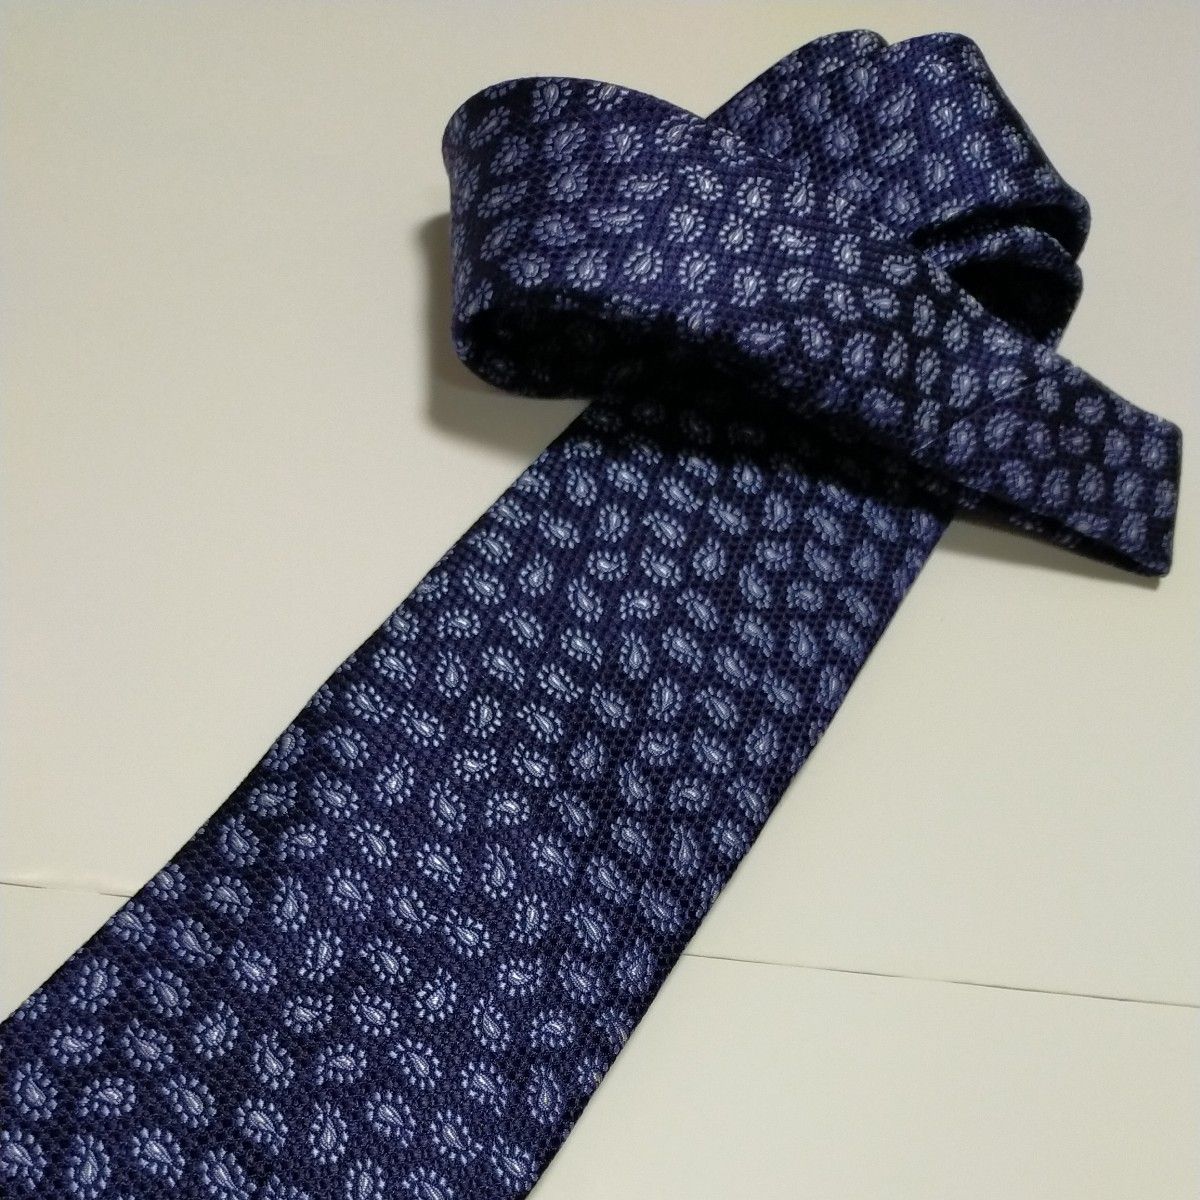  新品ブランドネクタイ 超お買い得品！高品質ネクタイ 日本製 シルク100% 超特価！